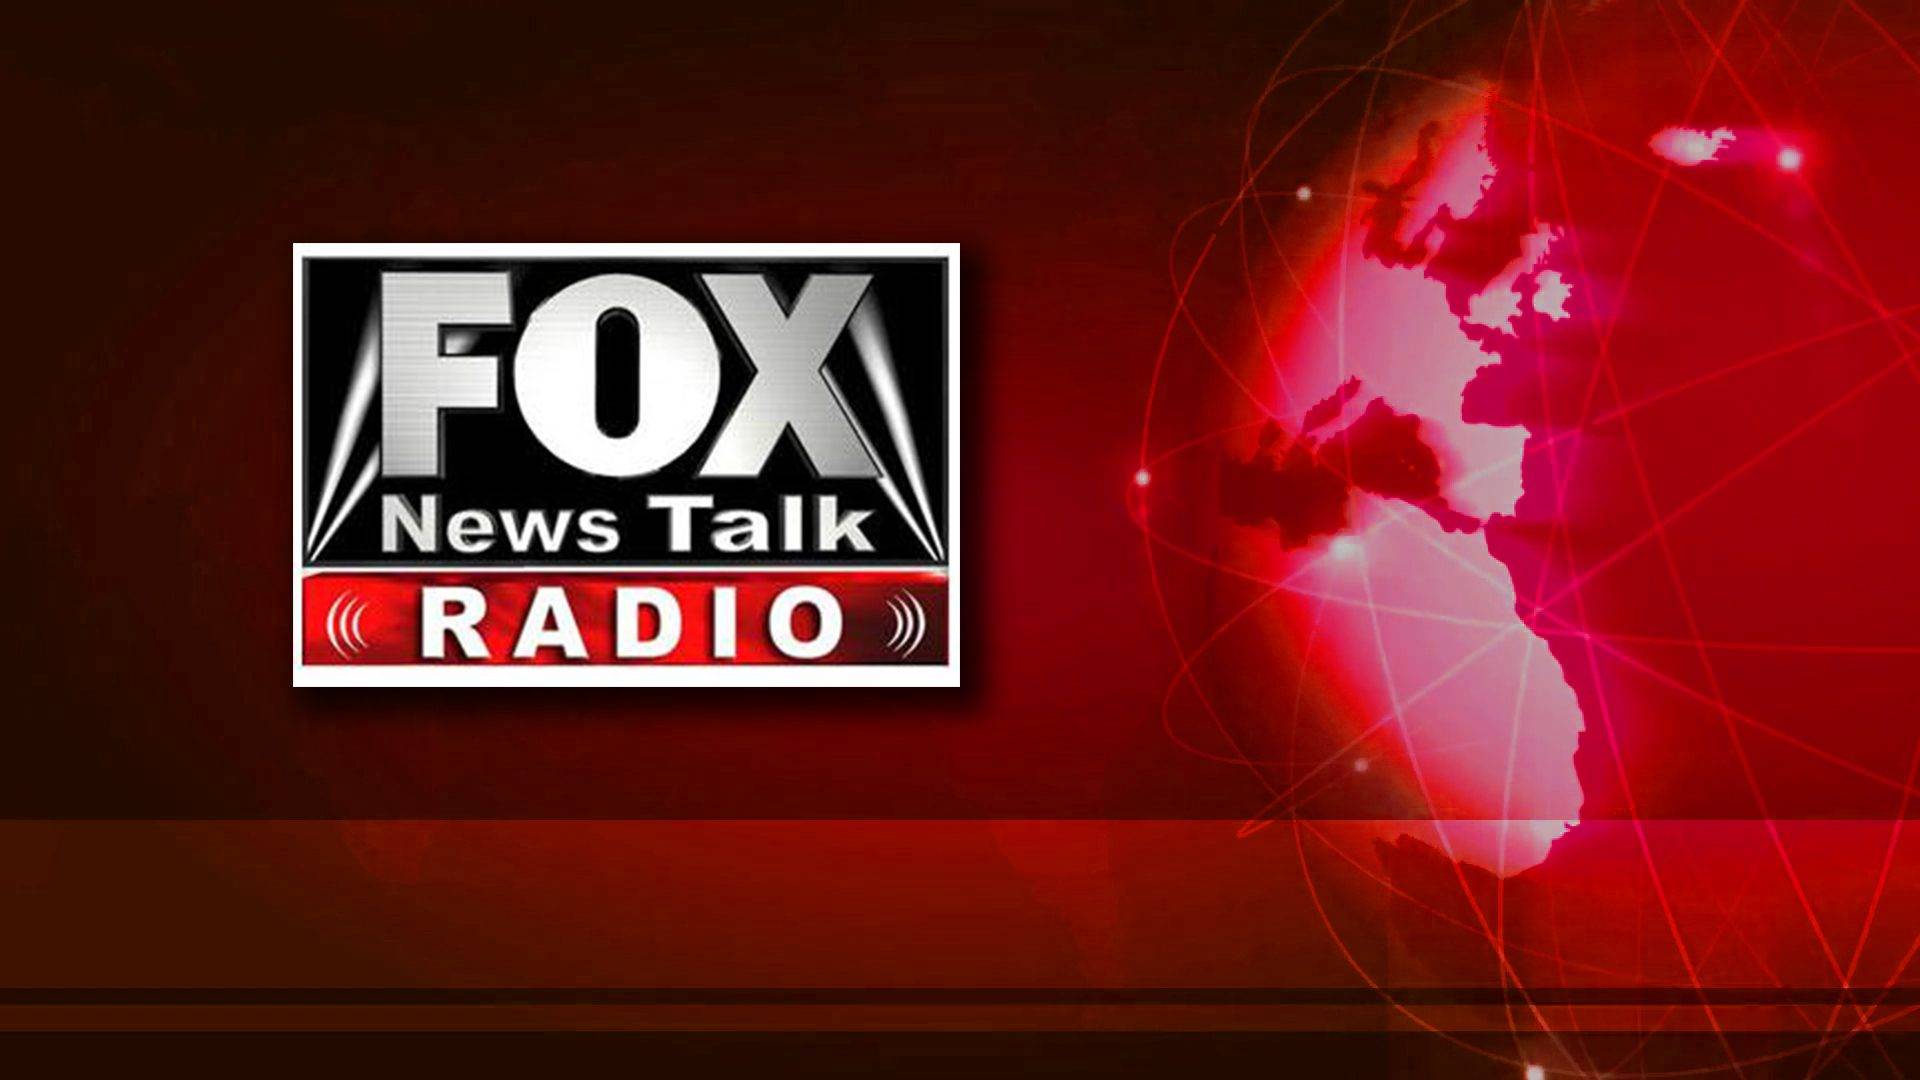 Fox News Talk